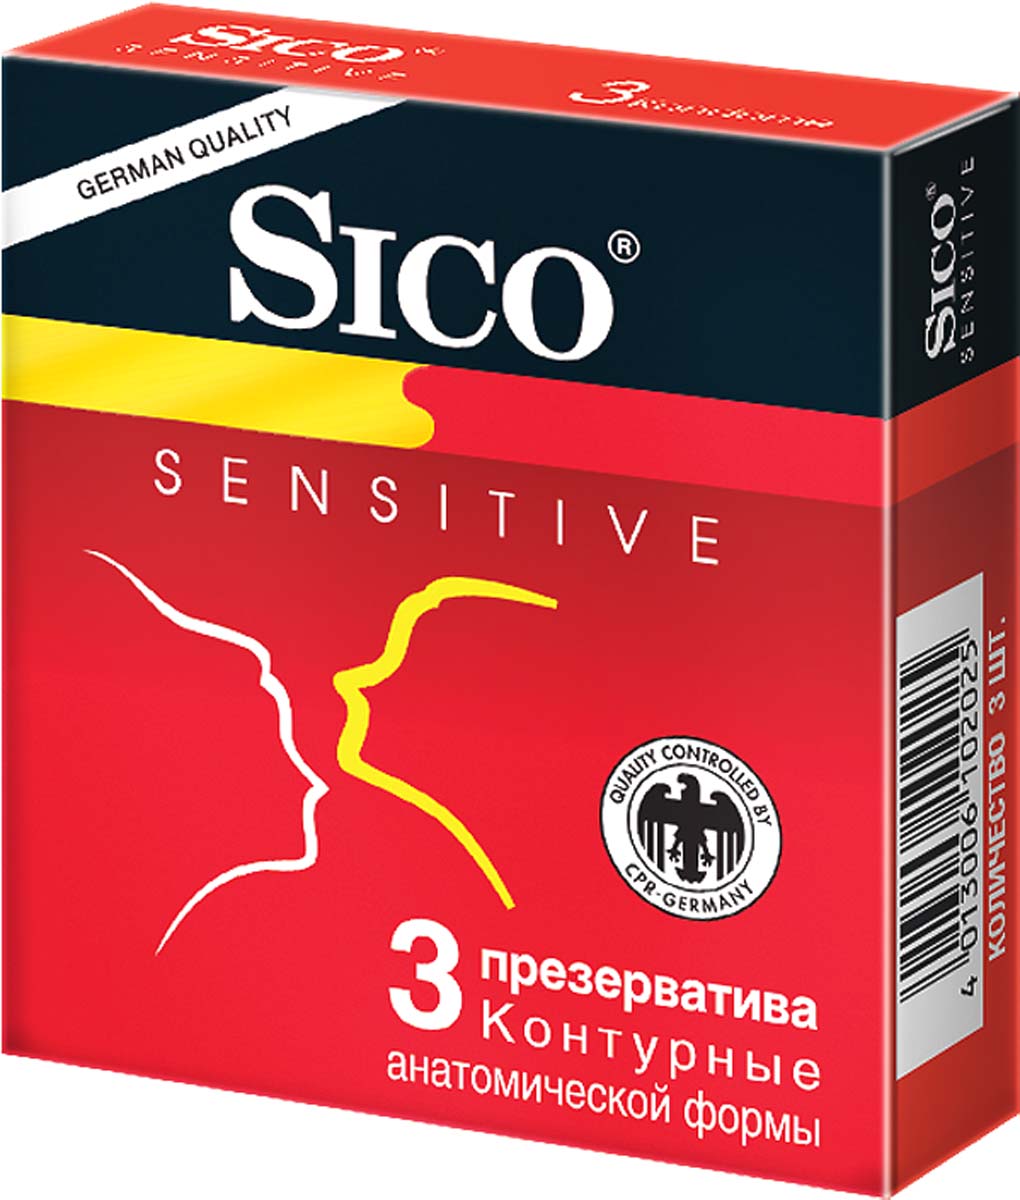 SICO Презервативы Sensitive, контурные, анатомической формы, 3 шт